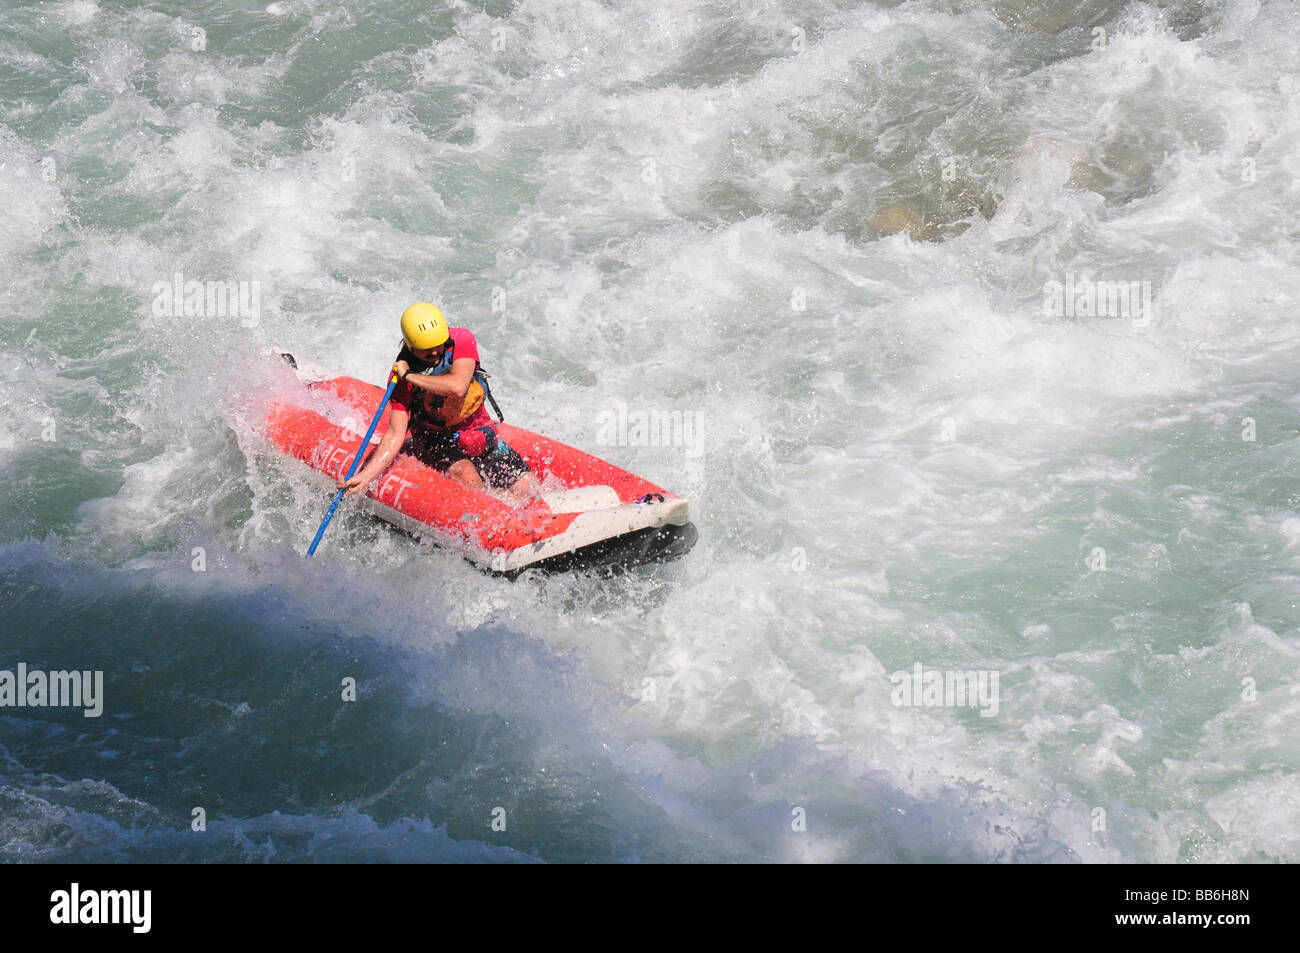 Turkey Antalya Koprulu River Canyon White water rafting Stock Photo